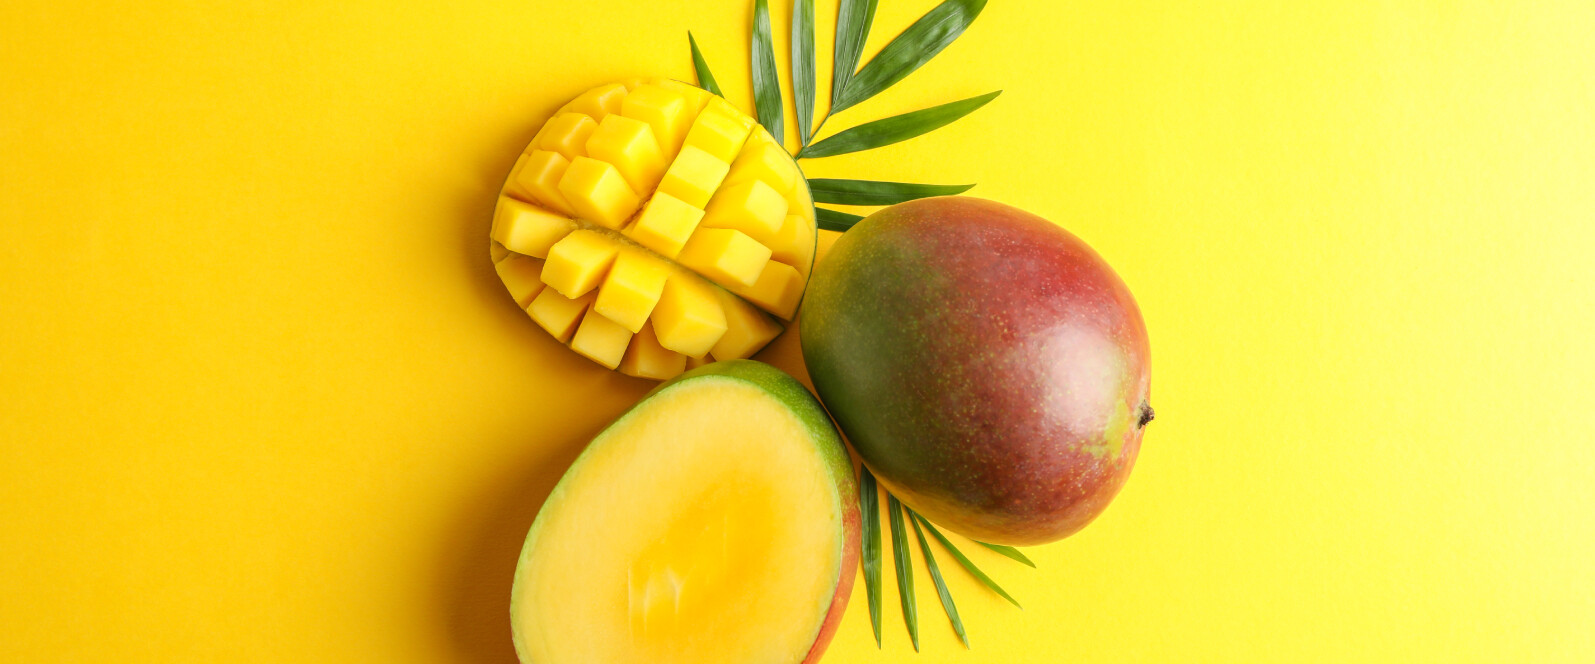 Eine offene und angeschnittene Mango und eine geschlossene Mango vor fruchtig gelben Hintergrund